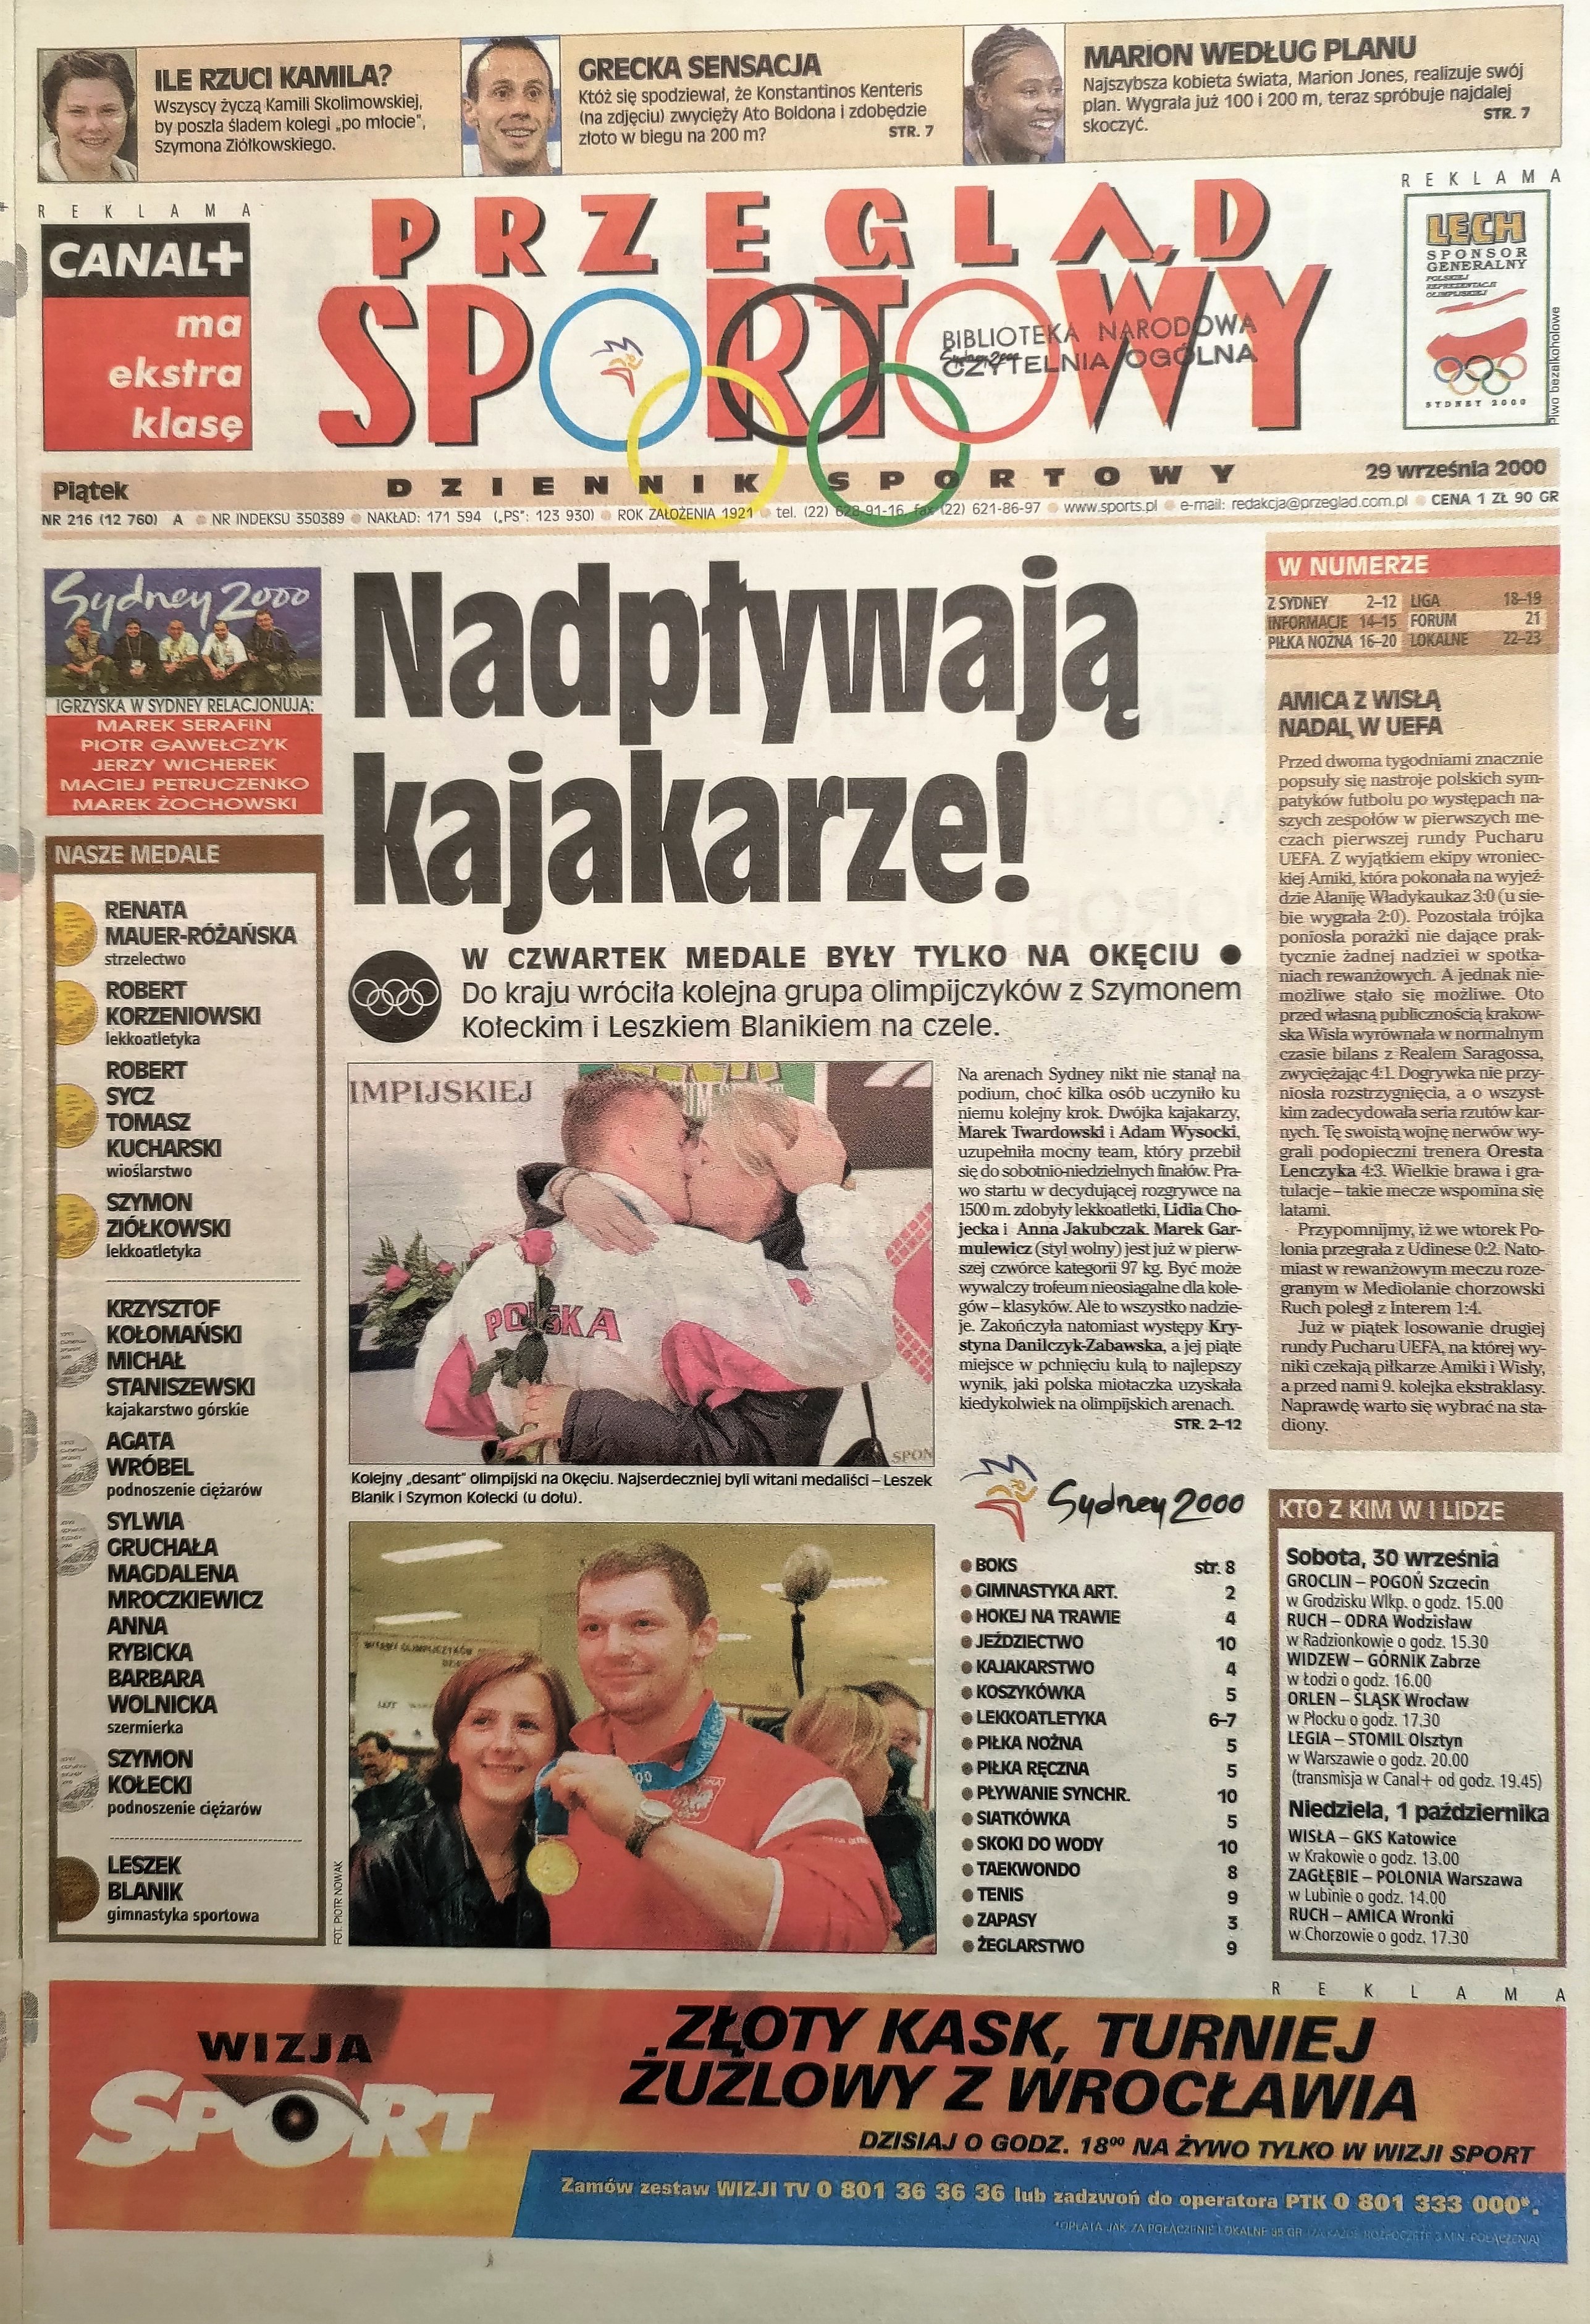 Przegląd Sportowy po meczu Wisła Kraków - Real Saragossa 4:1 pd, k 4-3 (28.09.2000)